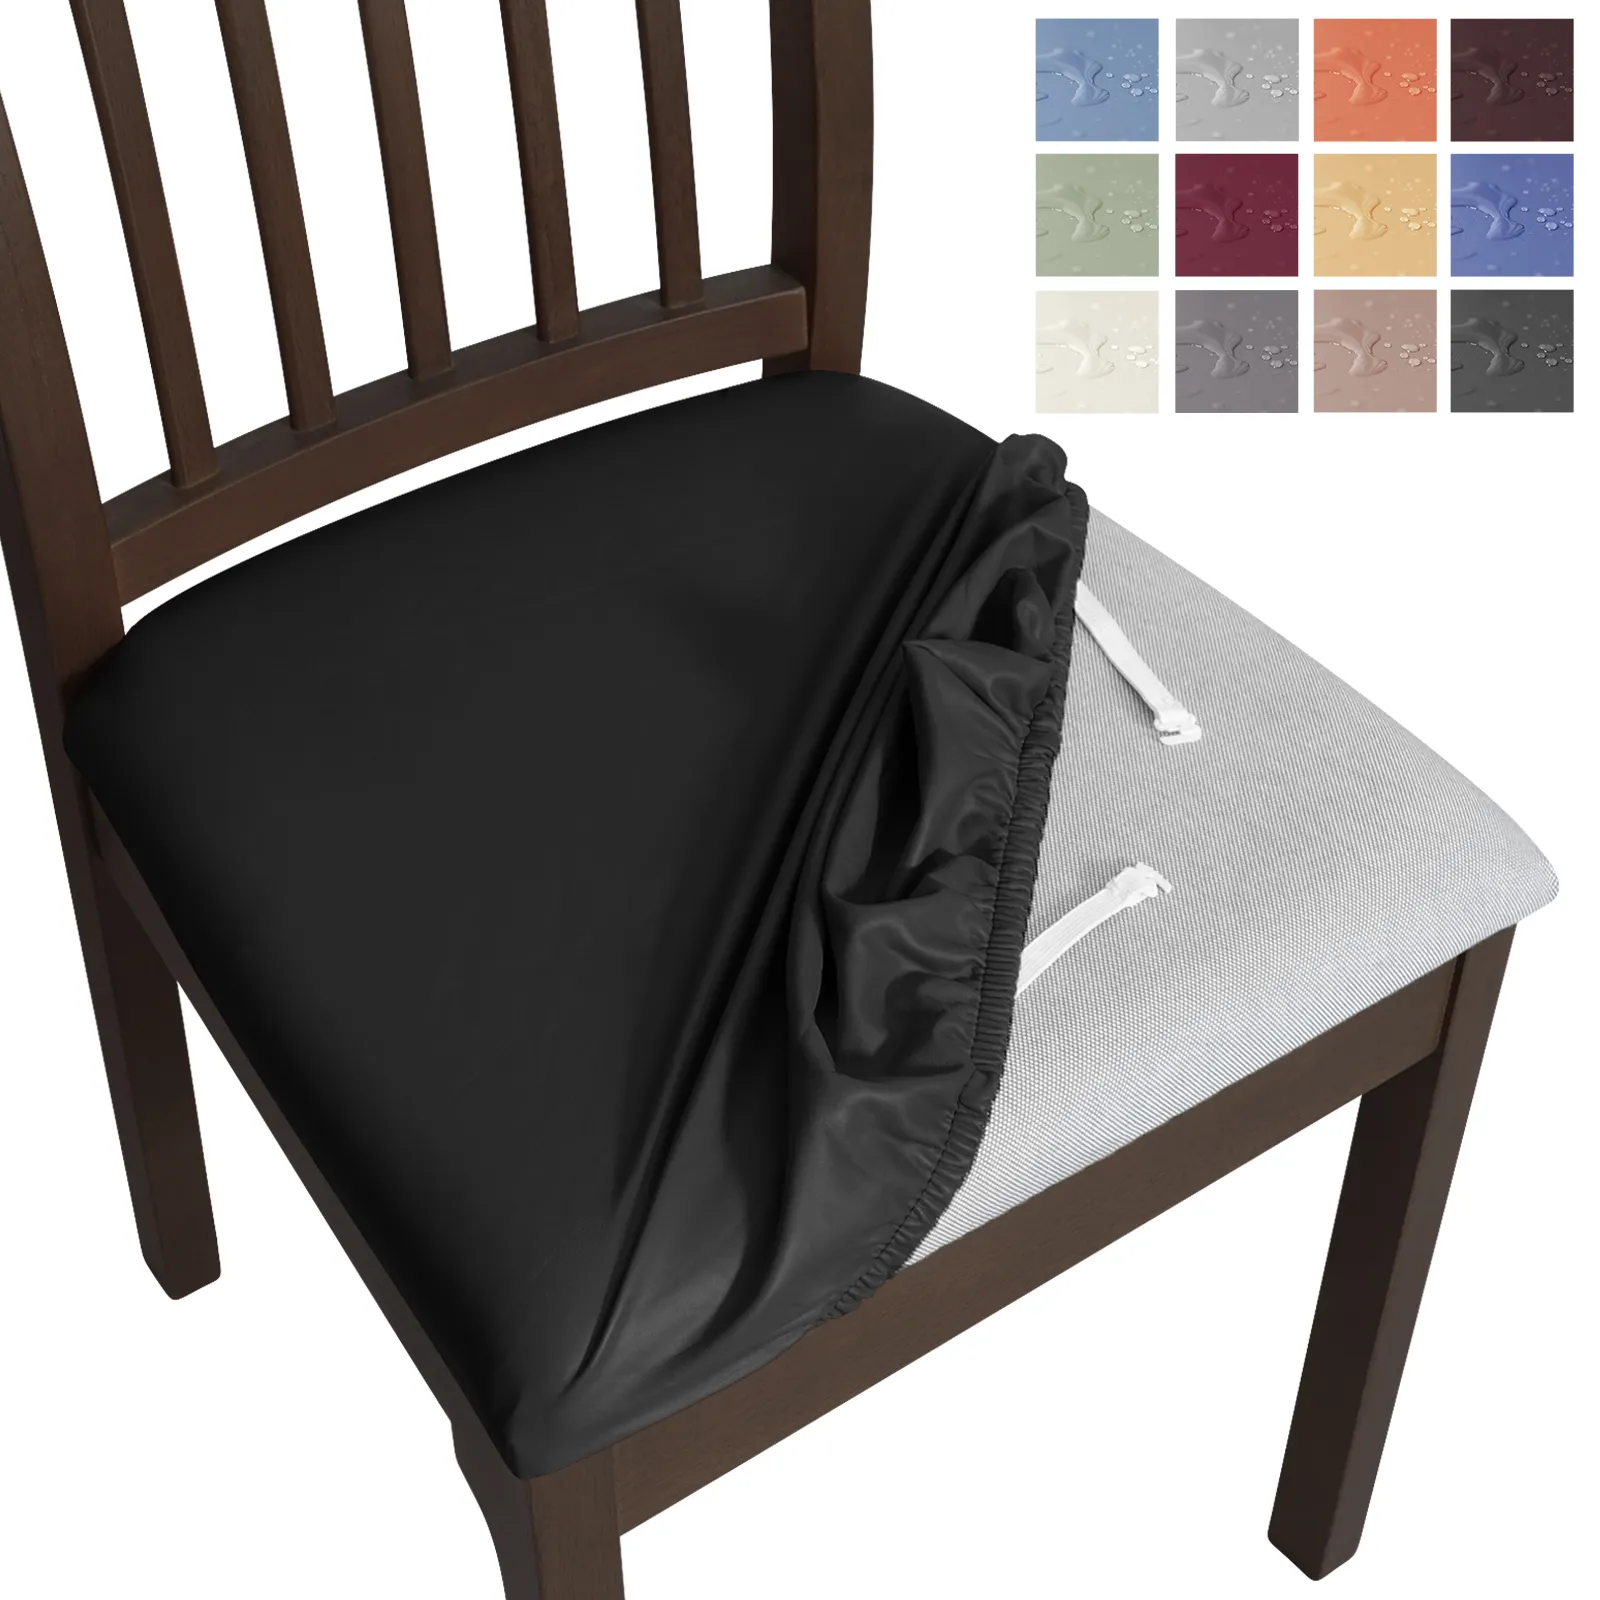 डाइनिंग रूम की कुर्सी के लिए वाटरप्रूफ सीट को कवर किया गया है जिसमें हटाने योग्य रूप से पिग चमड़े की रसोई भोजन कुर्सी सीट स्लाइपकवर शामिल हैं।